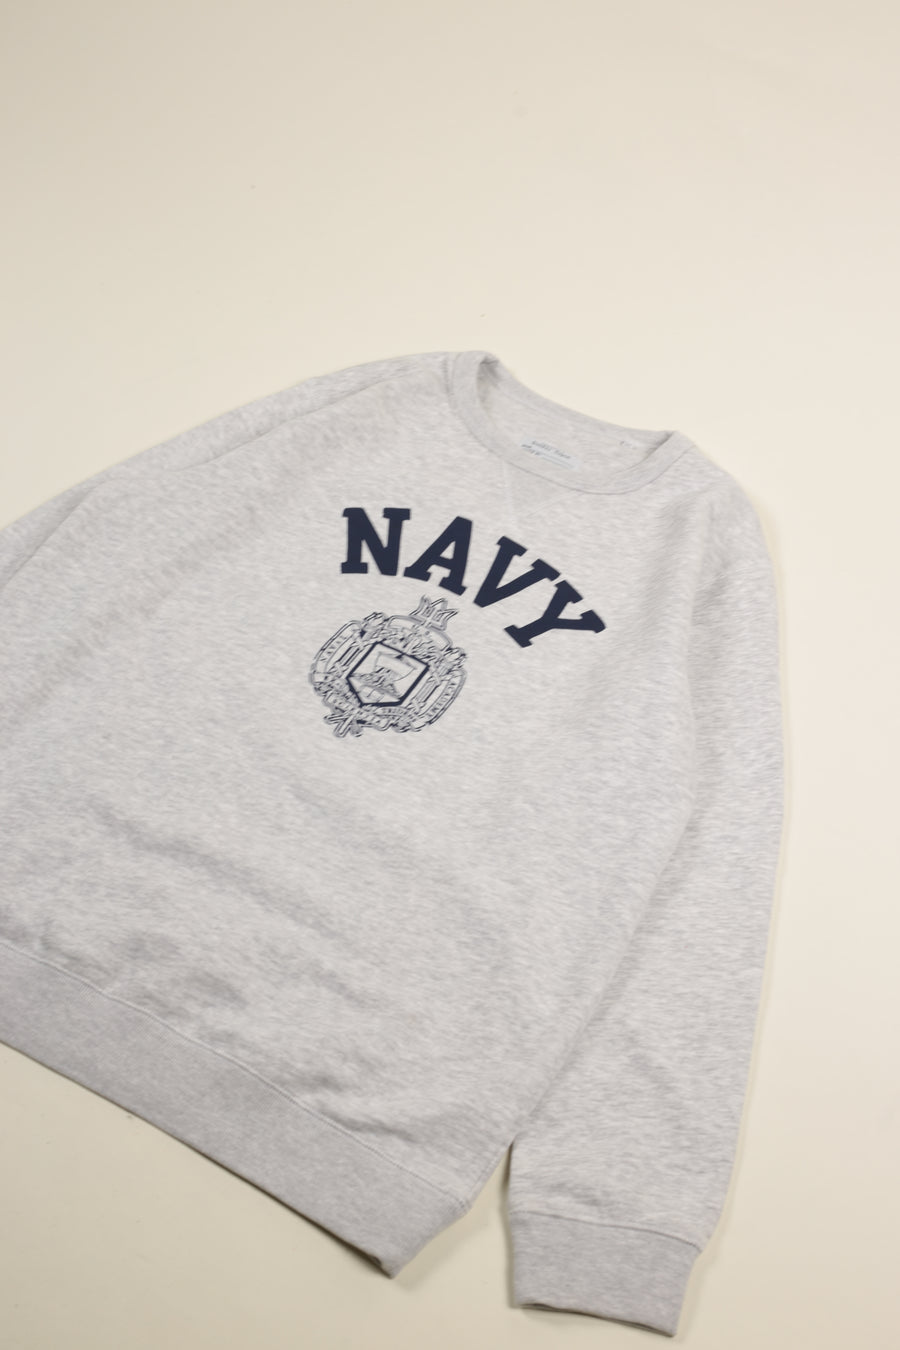 US Navy Academy Sweatshirt